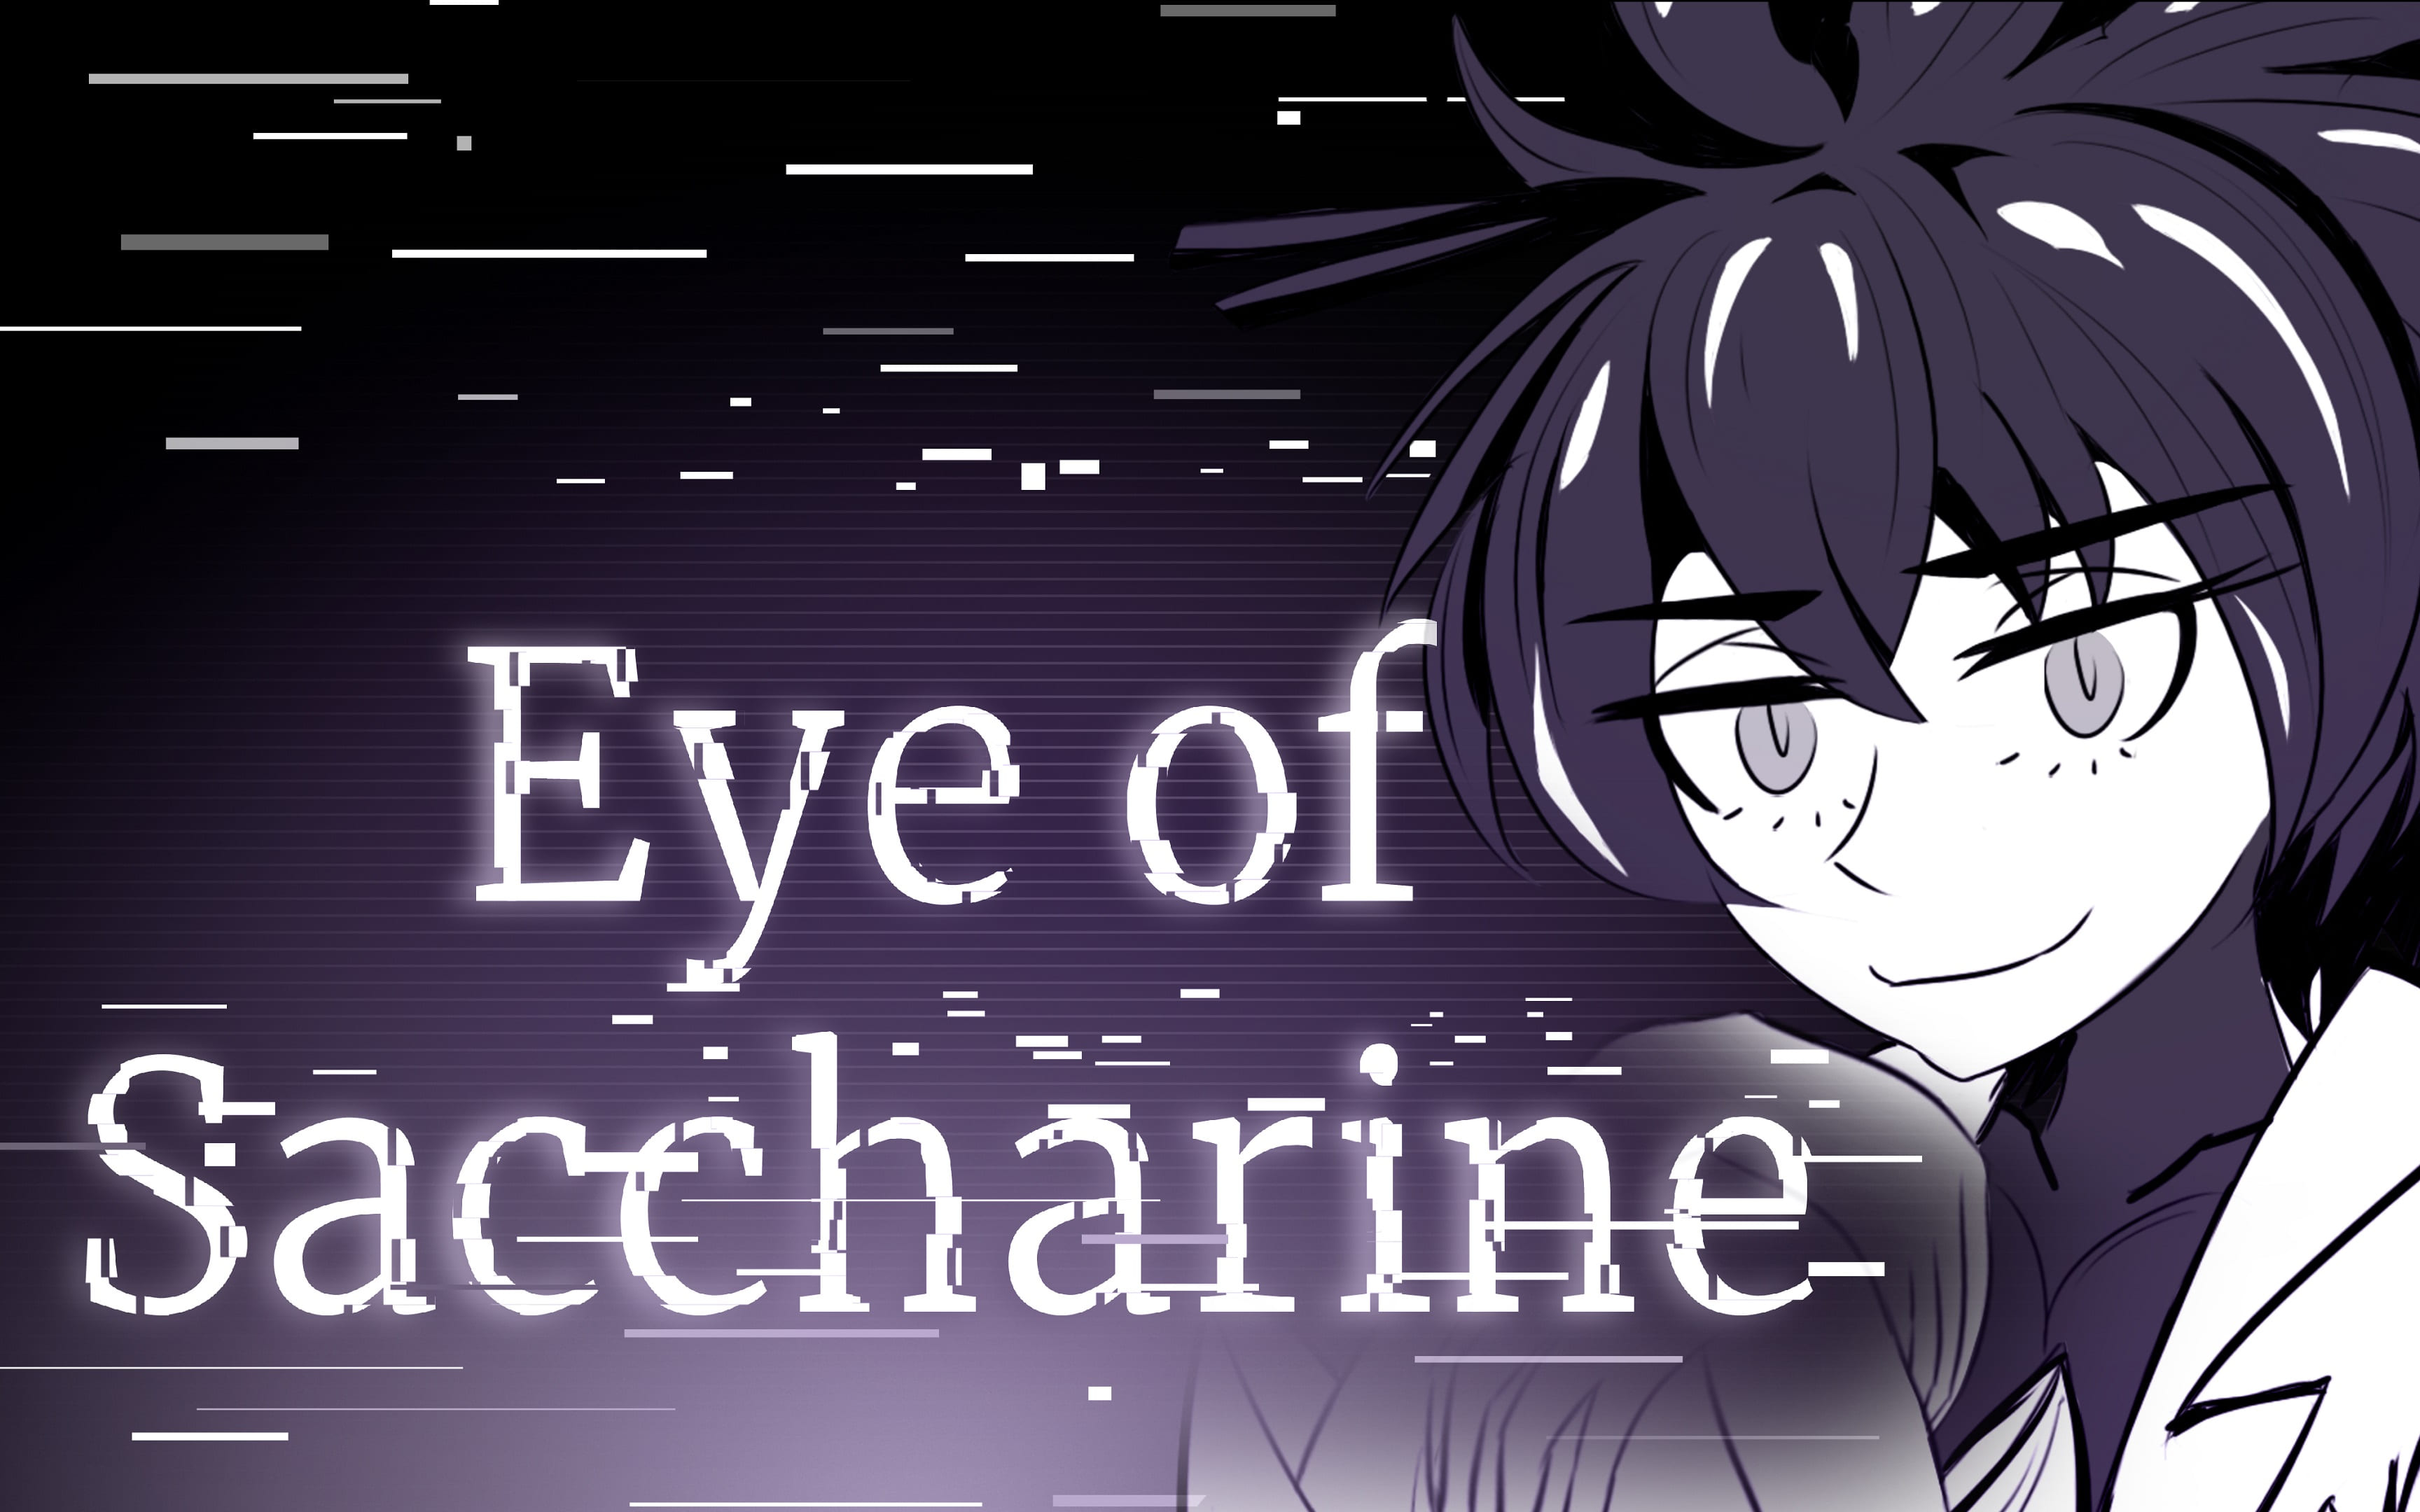 Eye of Saccharine